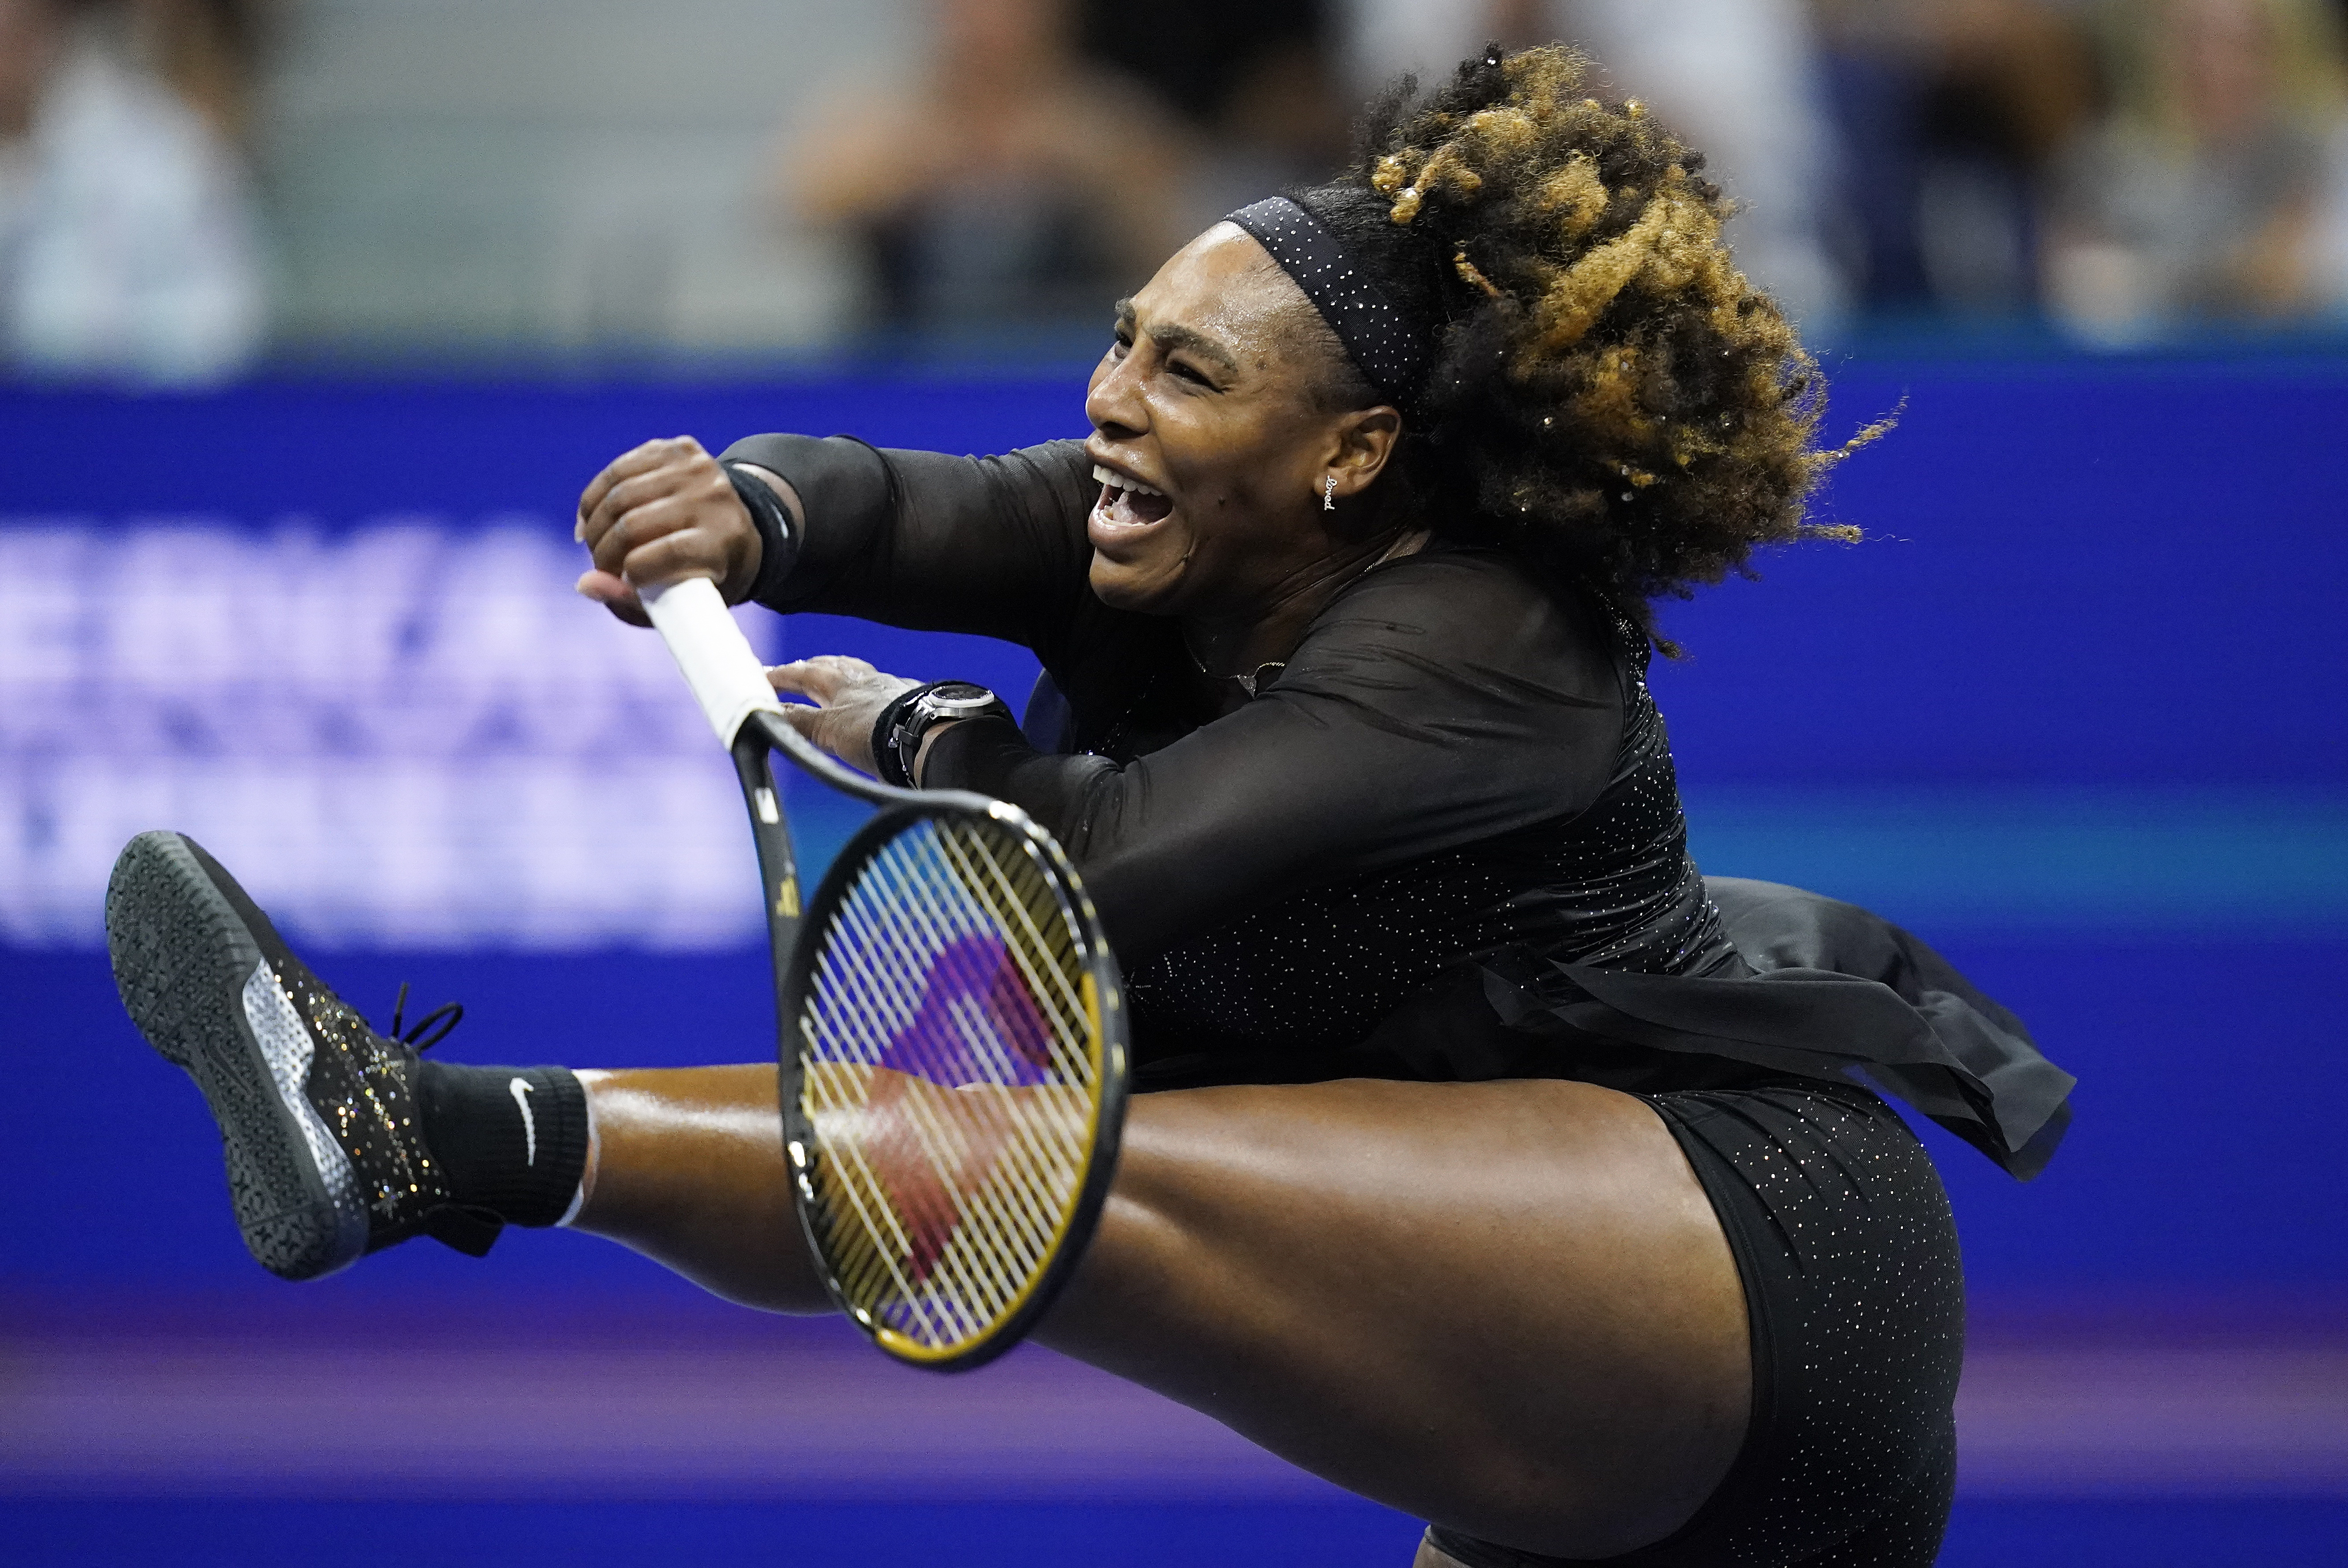 Serena Williams loses to Ajla Tomljanovic in U.S